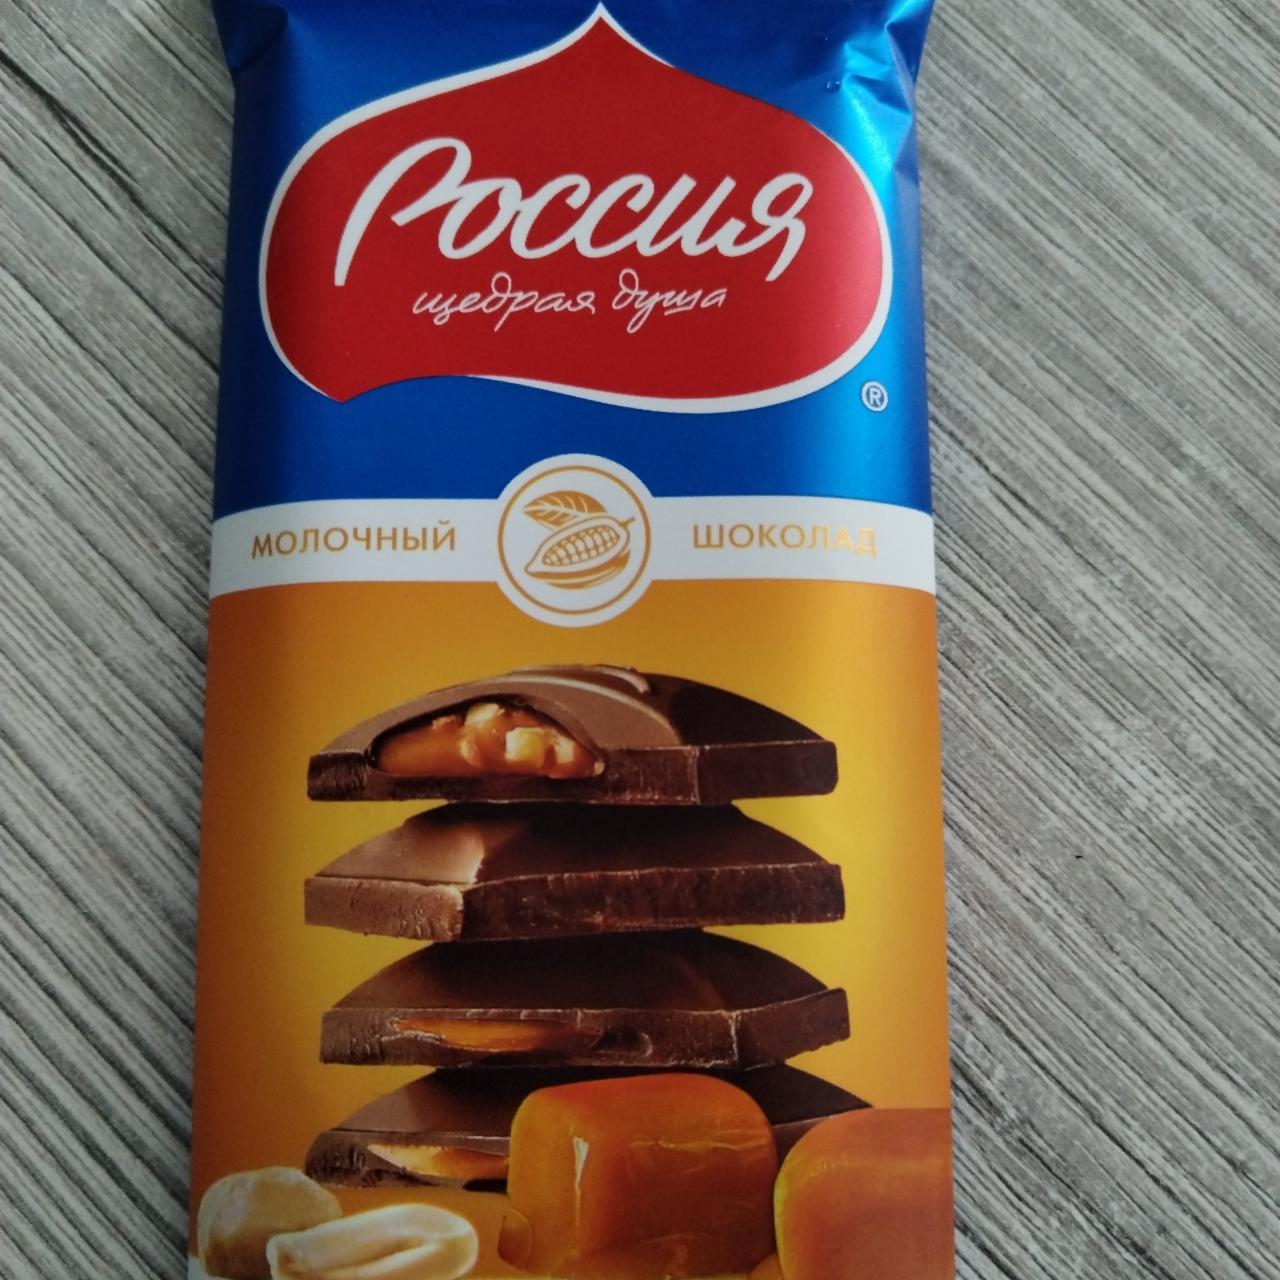 Фото - Шоколад молочный карамель арахис Россия - щедрая душа!